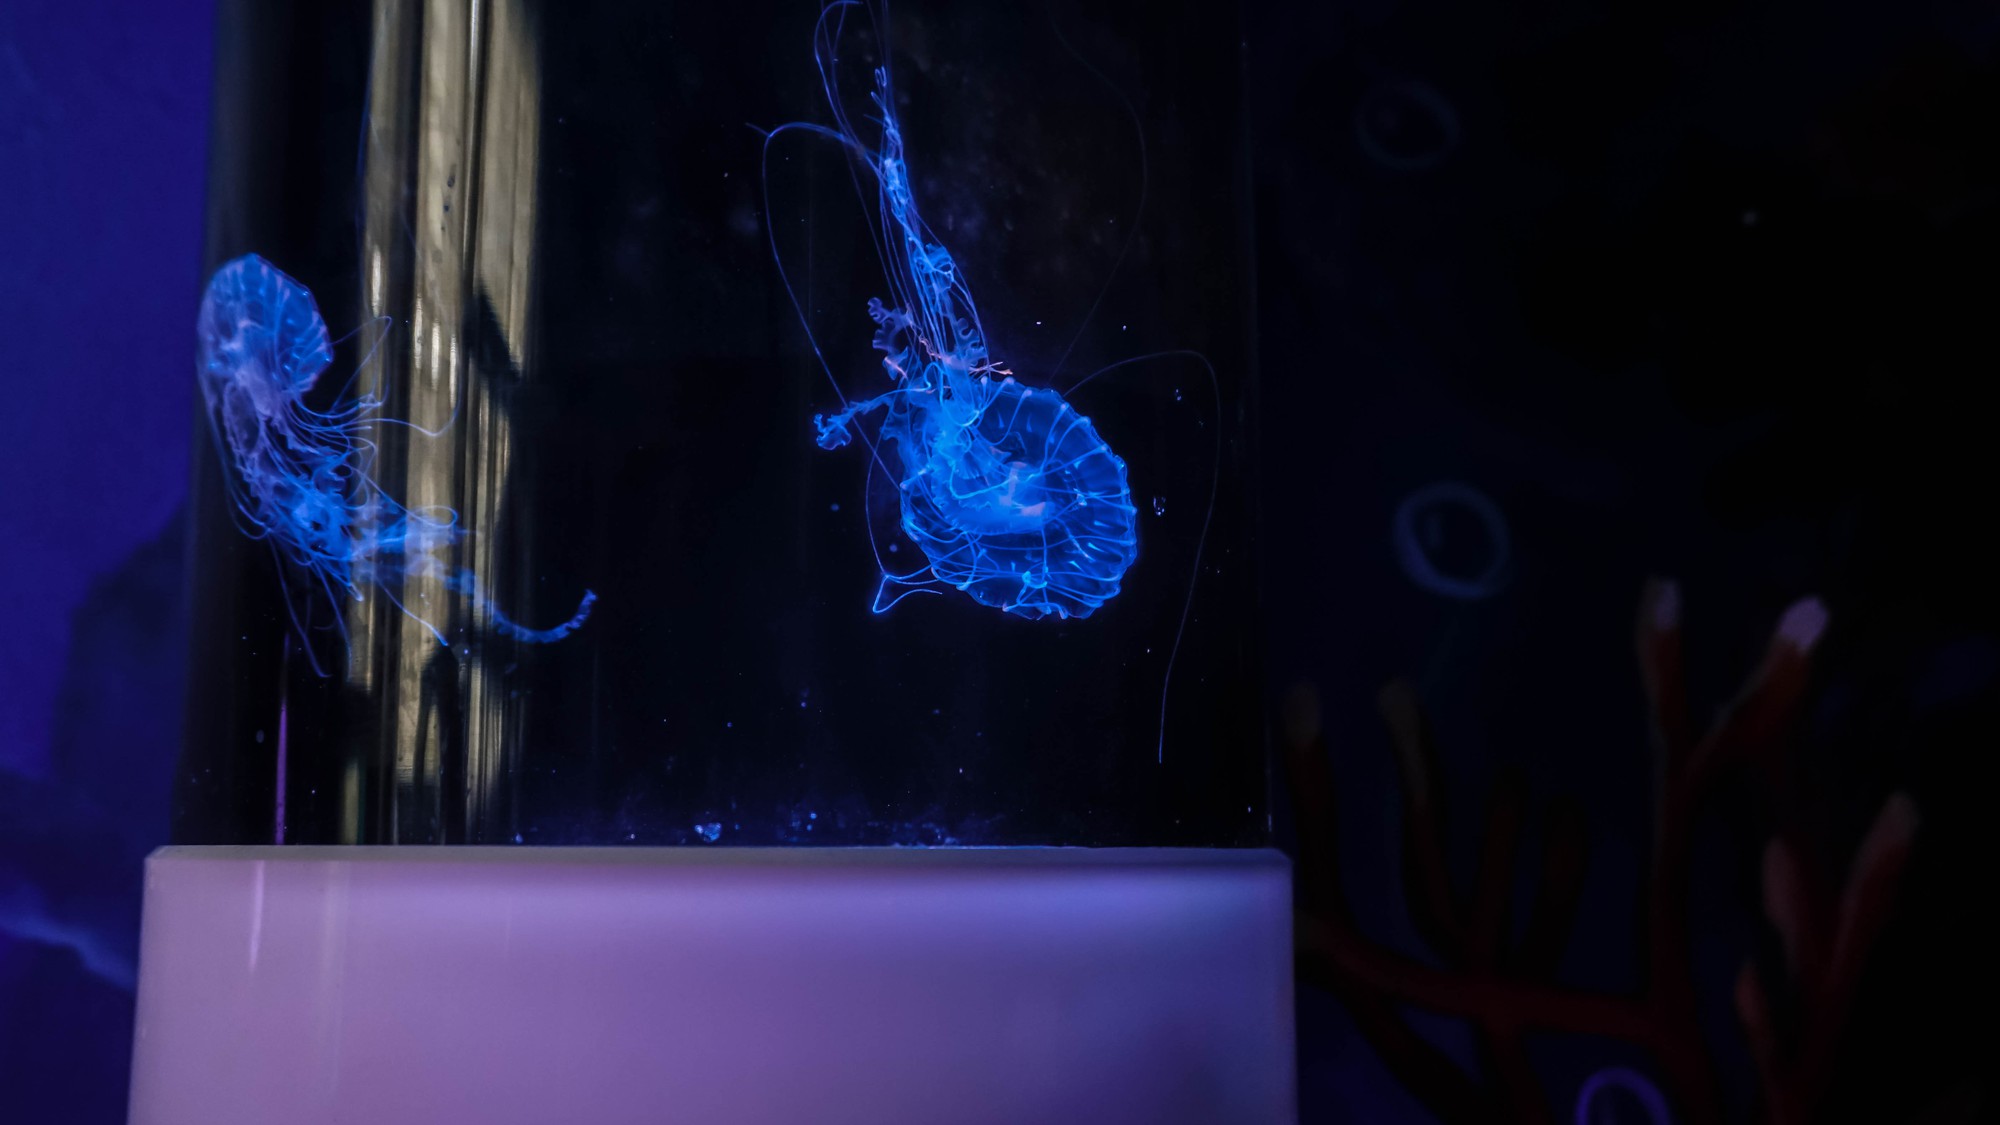 Mô hình nuôi sứa cảnh sống ảo tại nhà của cô gái trẻ ở TP HCM - Ảnh 7.